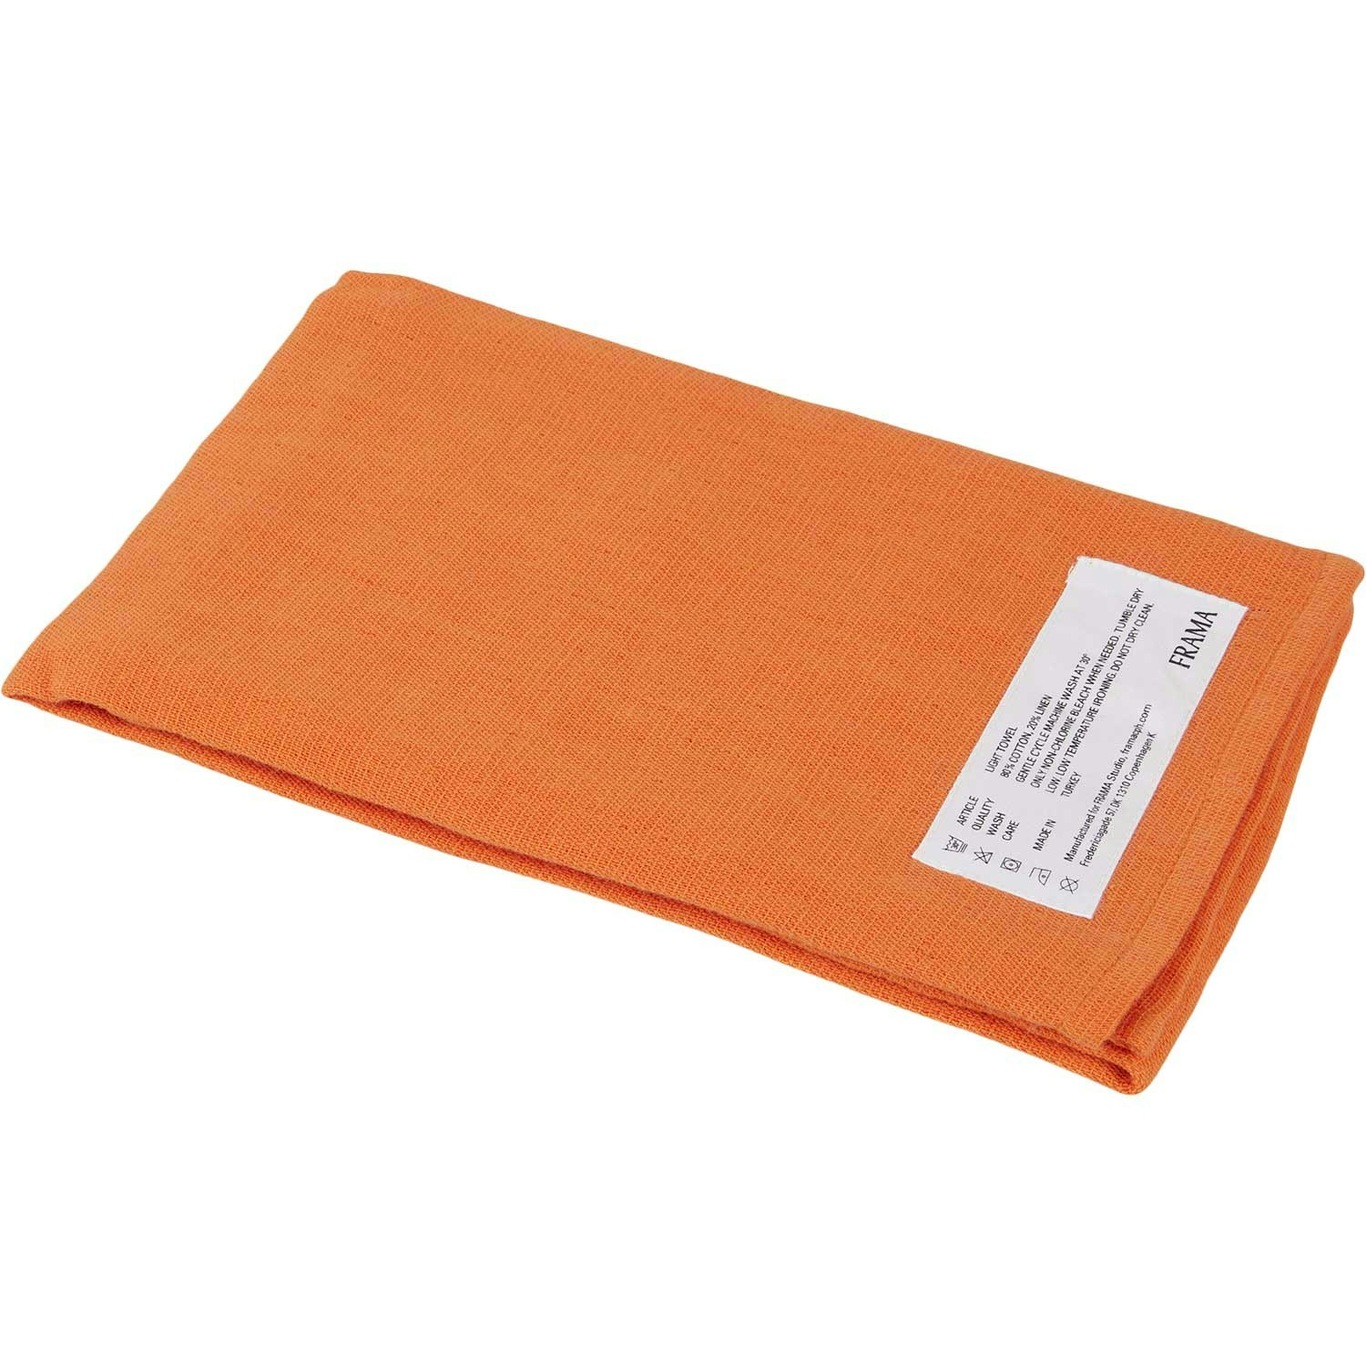 Light Towel Handdoek 50x80 cm, Burnt Orange